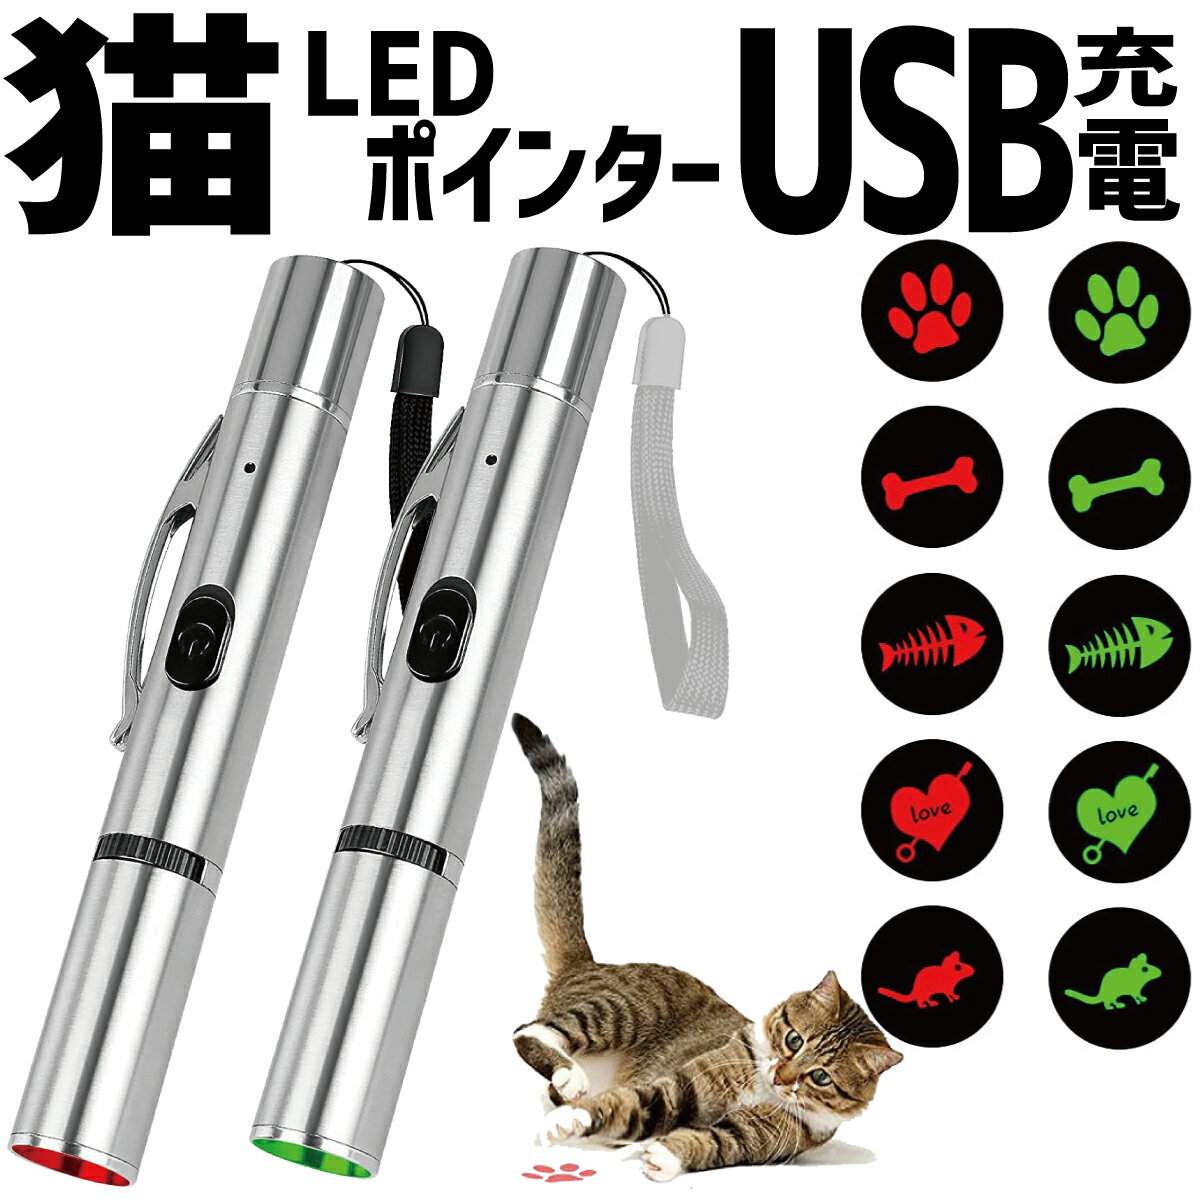  P2{   L  LED|C^[ Cg L炵 ˂炵 USB[d Lp ^s ˂ lR Lbg ybg 邨  ق  n[g ˂ XgX